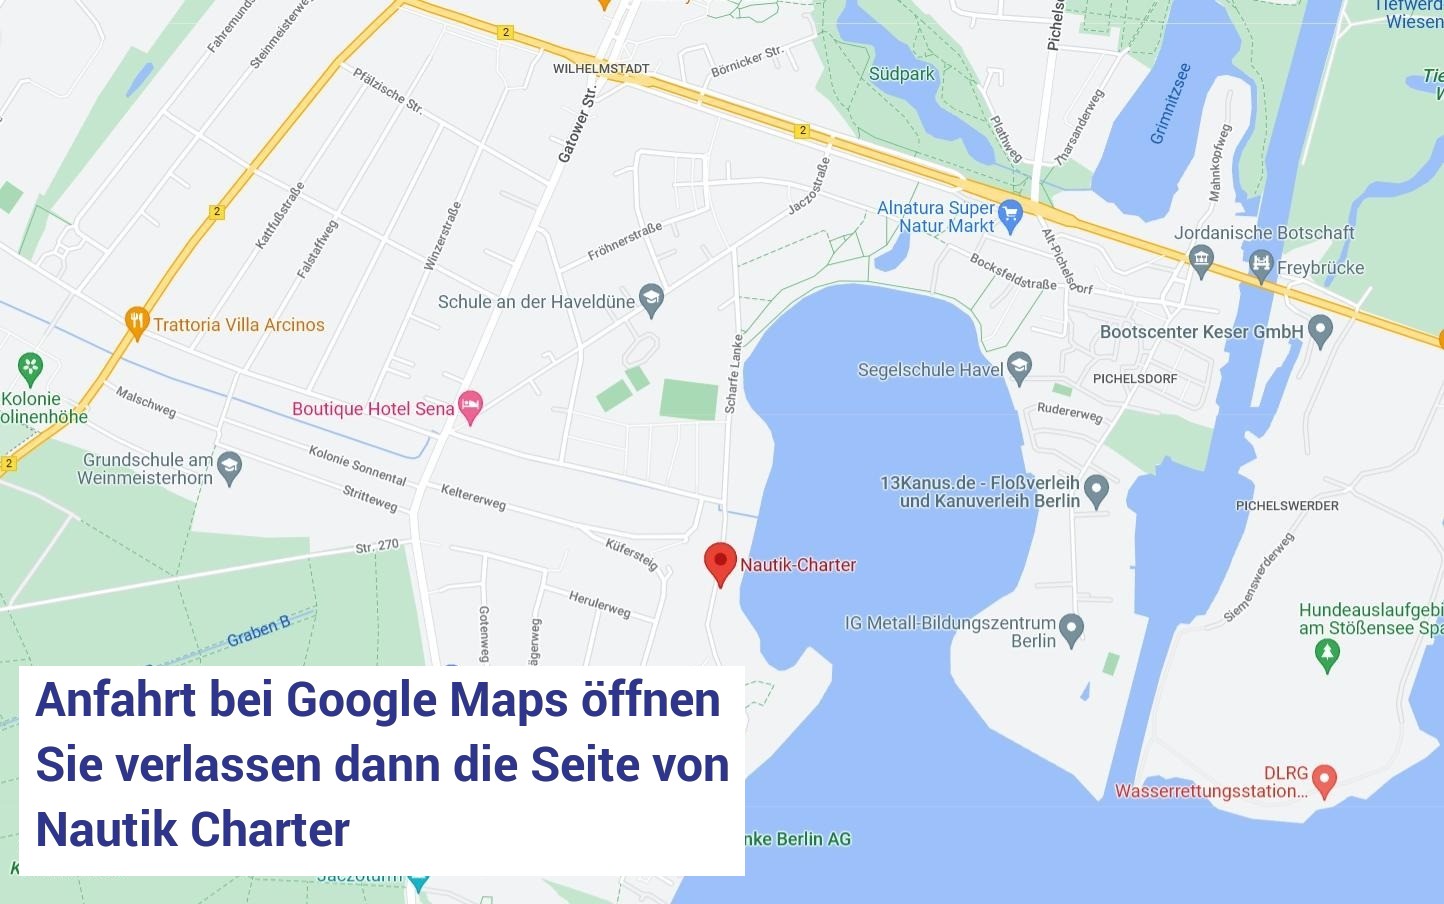 Anfahrtsausschnitt Google Maps